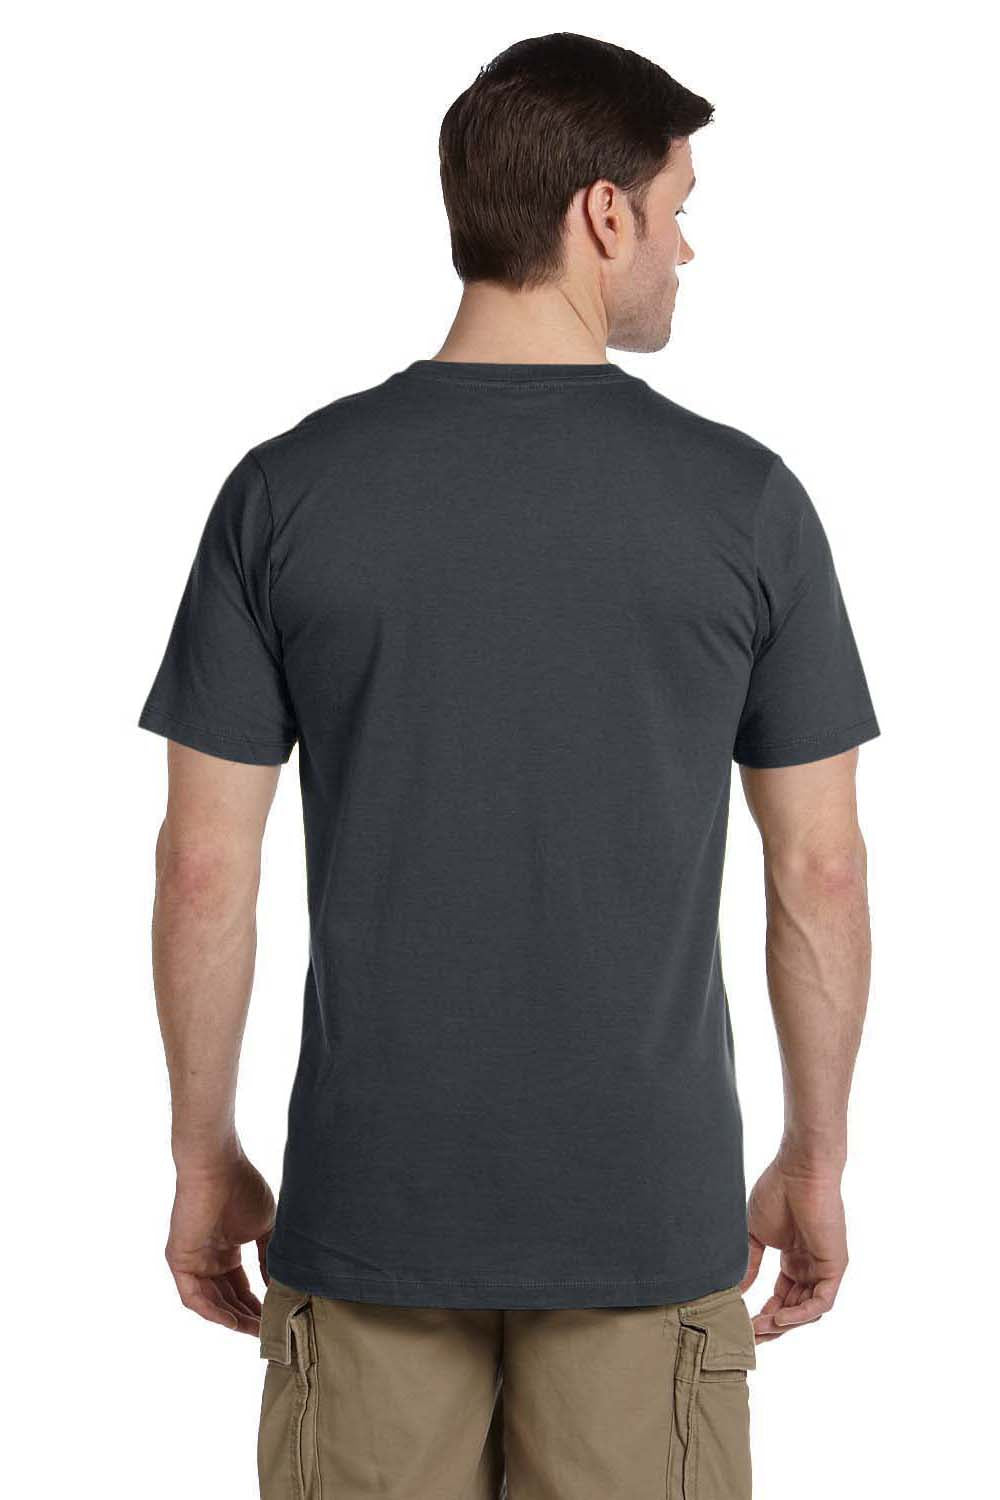 Econscious EC1075 Mens Short Sleeve Crewneck T-Shirt Charcoal Grey Back